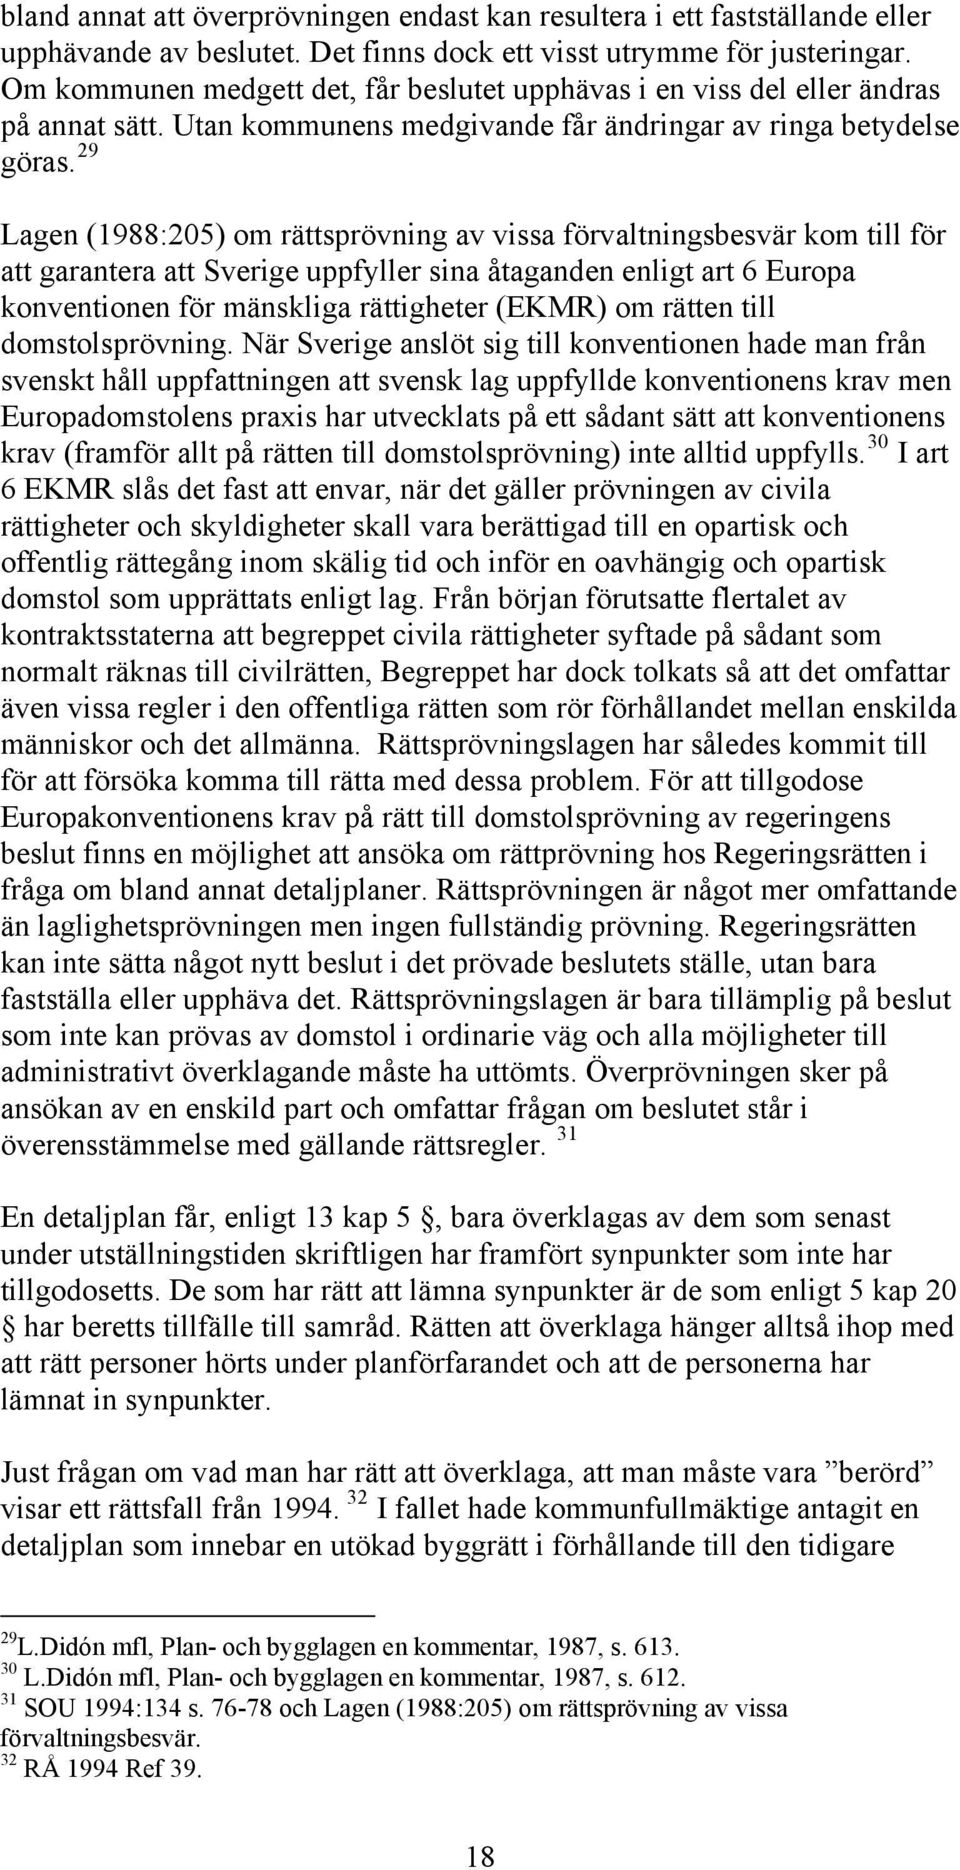 29 Lagen (1988:205) om rättsprövning av vissa förvaltningsbesvär kom till för att garantera att Sverige uppfyller sina åtaganden enligt art 6 Europa konventionen för mänskliga rättigheter (EKMR) om